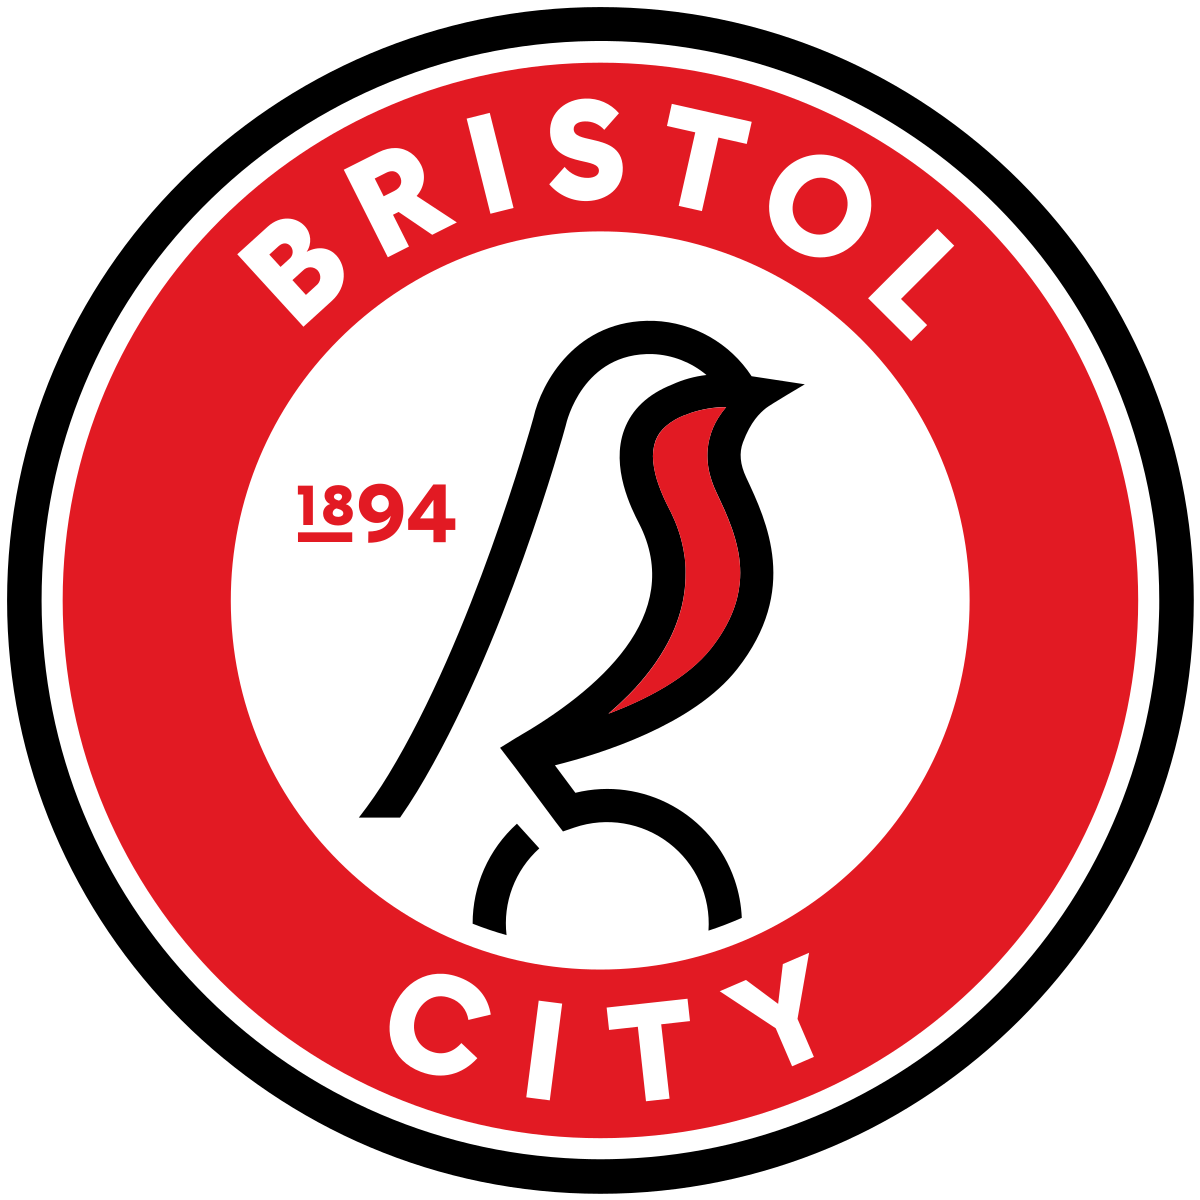 Bristol City v Middlesbrough - Hospitality 2018